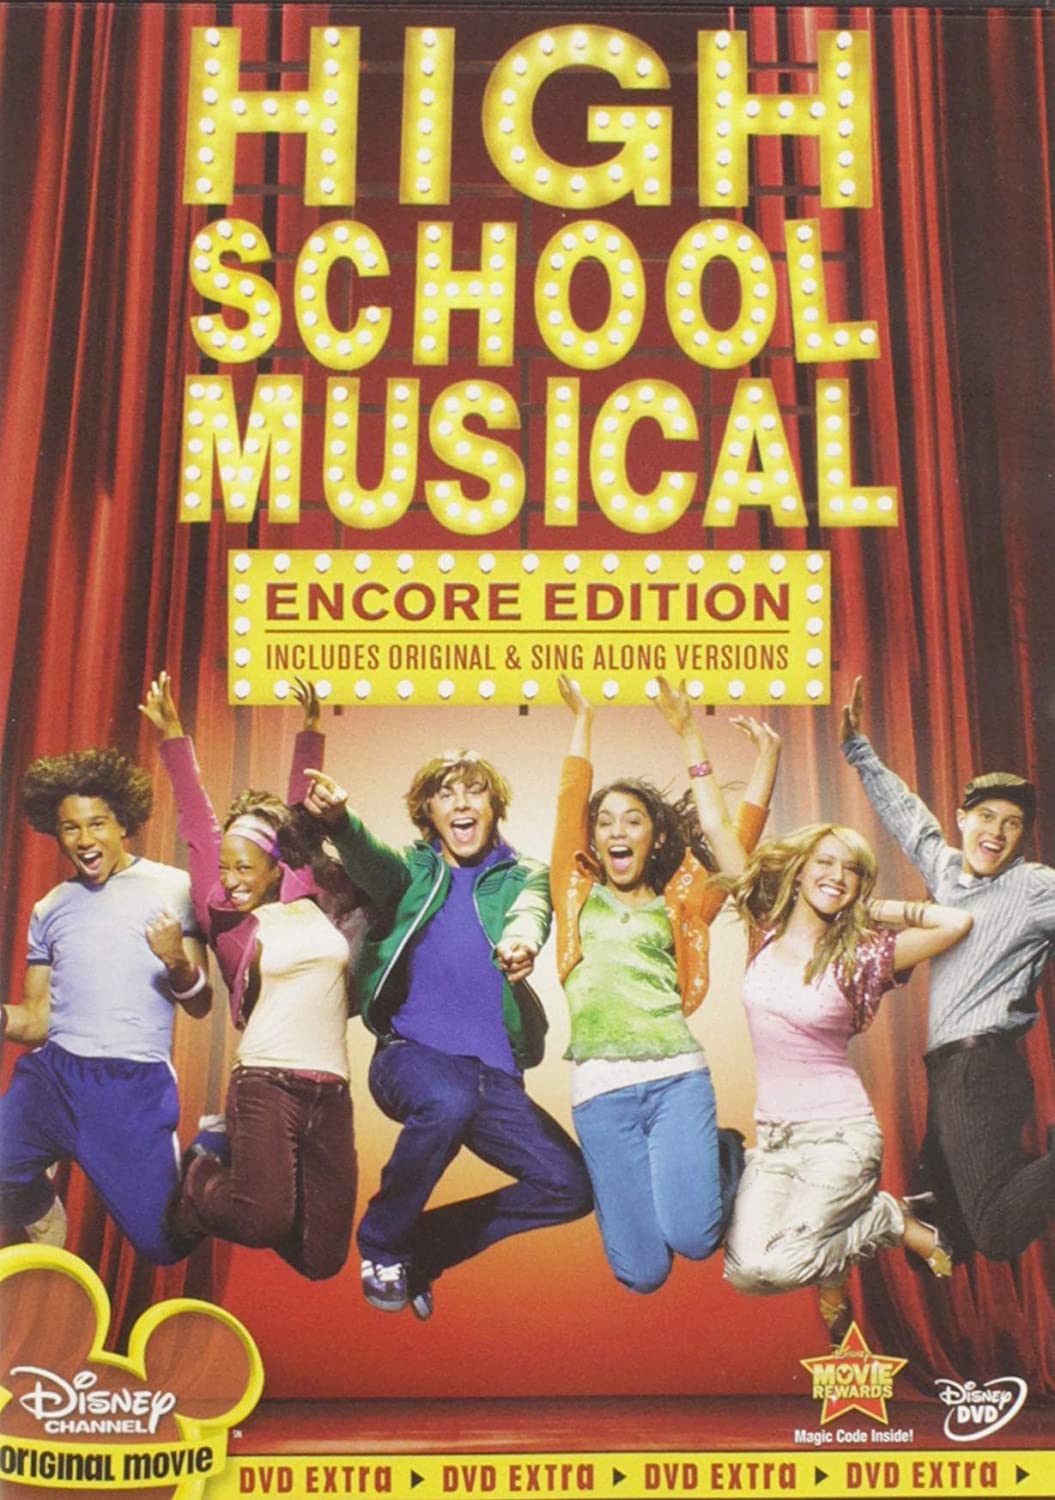 Capa do DVD de "High School Musical", filme que daria início a uma franquia de sucesso (Foto: Divulgação/Disney Channel)